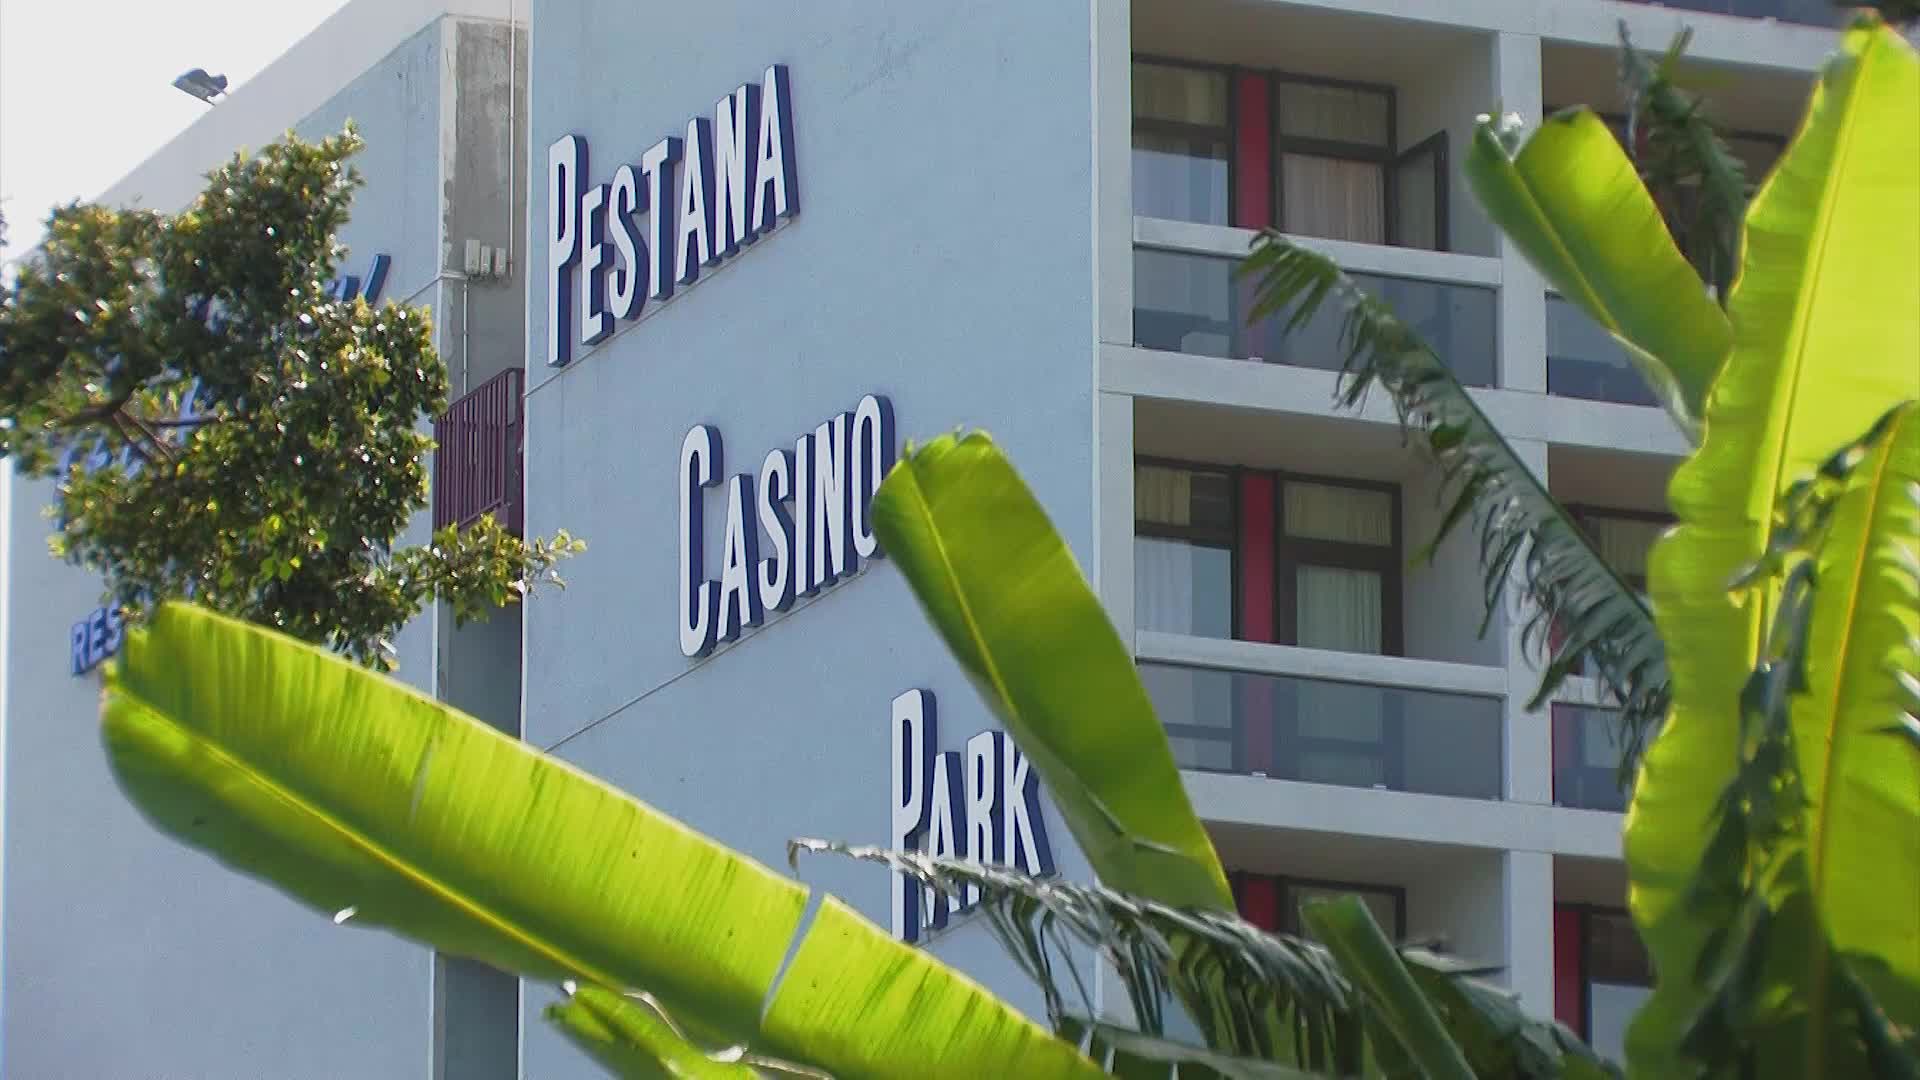 Pestana Casino Park